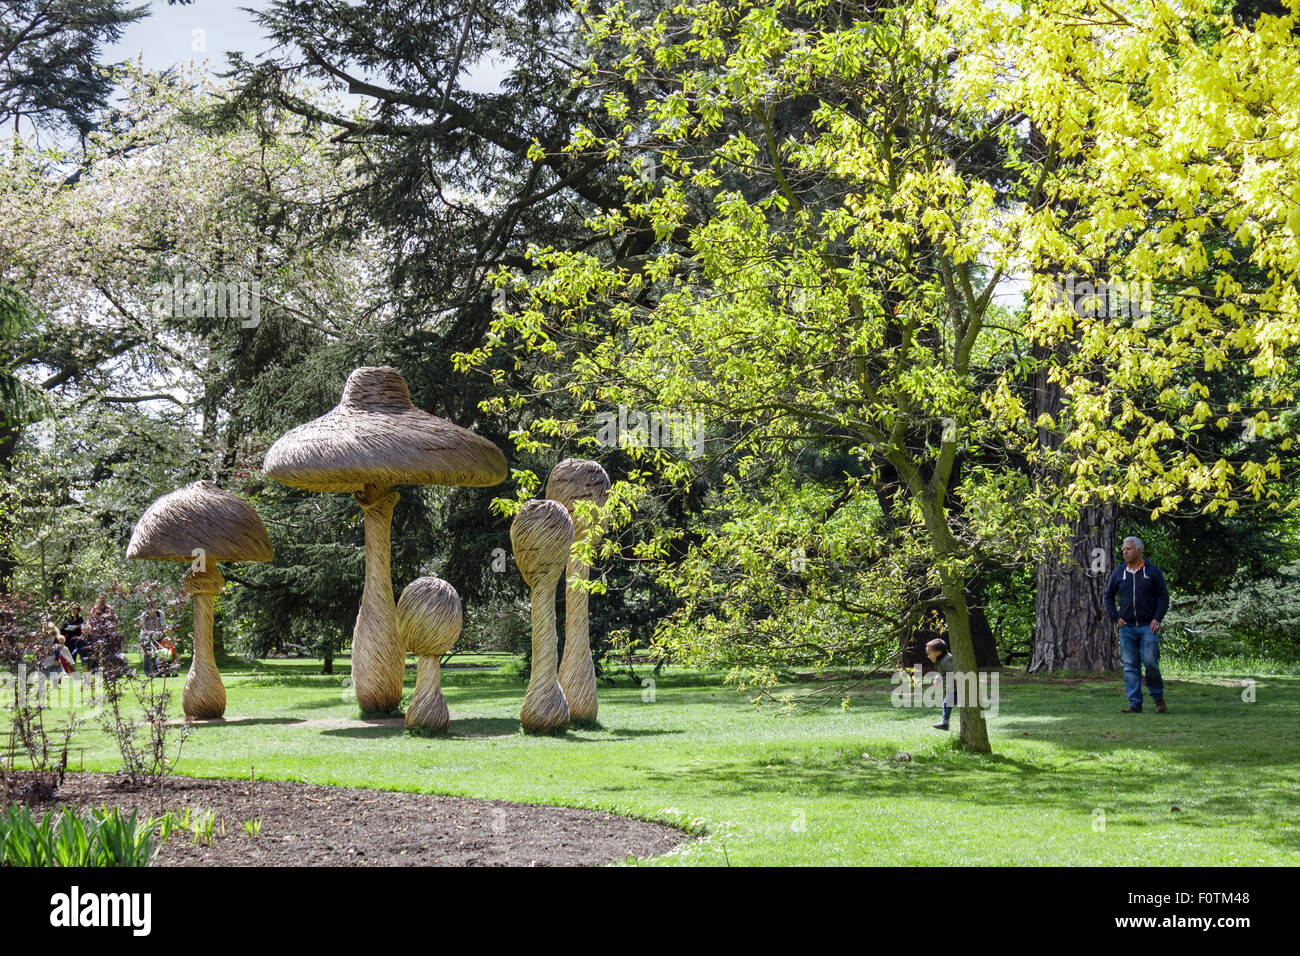 Des champignons géants faits de willow par artiste Tom Hare. Kew Gardens, London, UK Banque D'Images